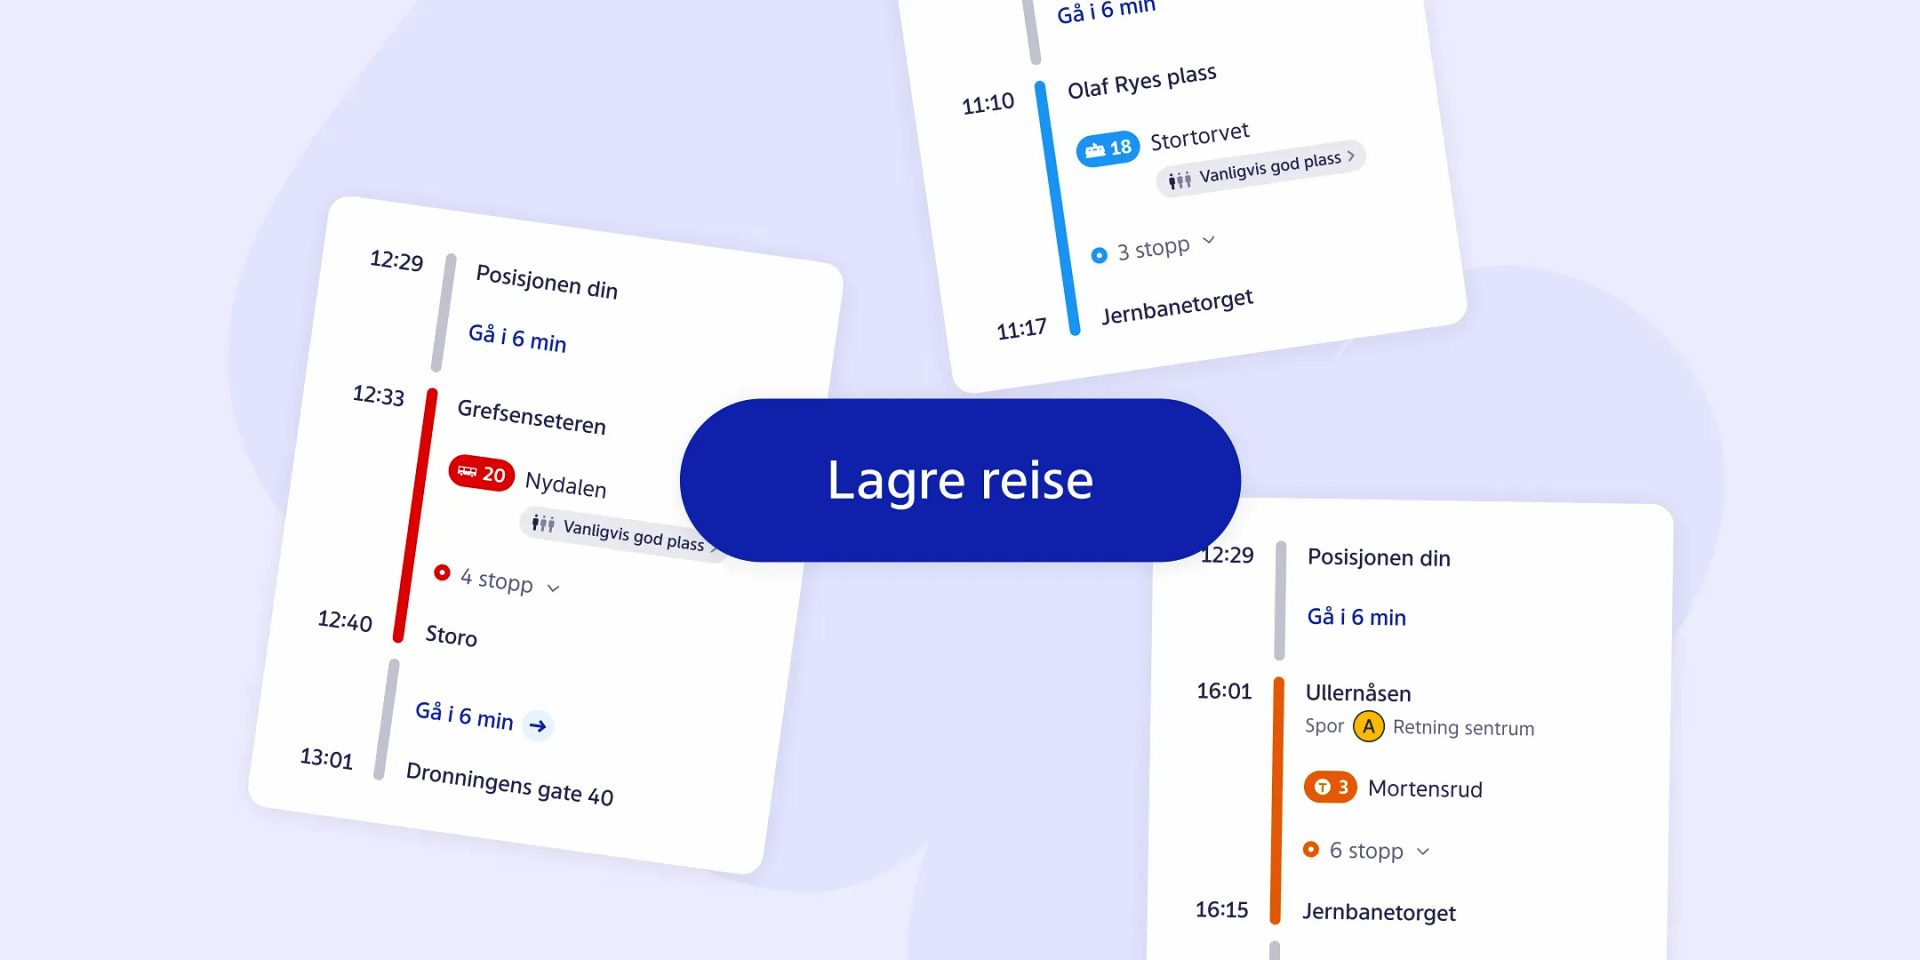 Digitalt reiseplangrensesnitt på norsk, som viser en reise med tittelen "lagre reise" med ulike transportsegmenter og tider.